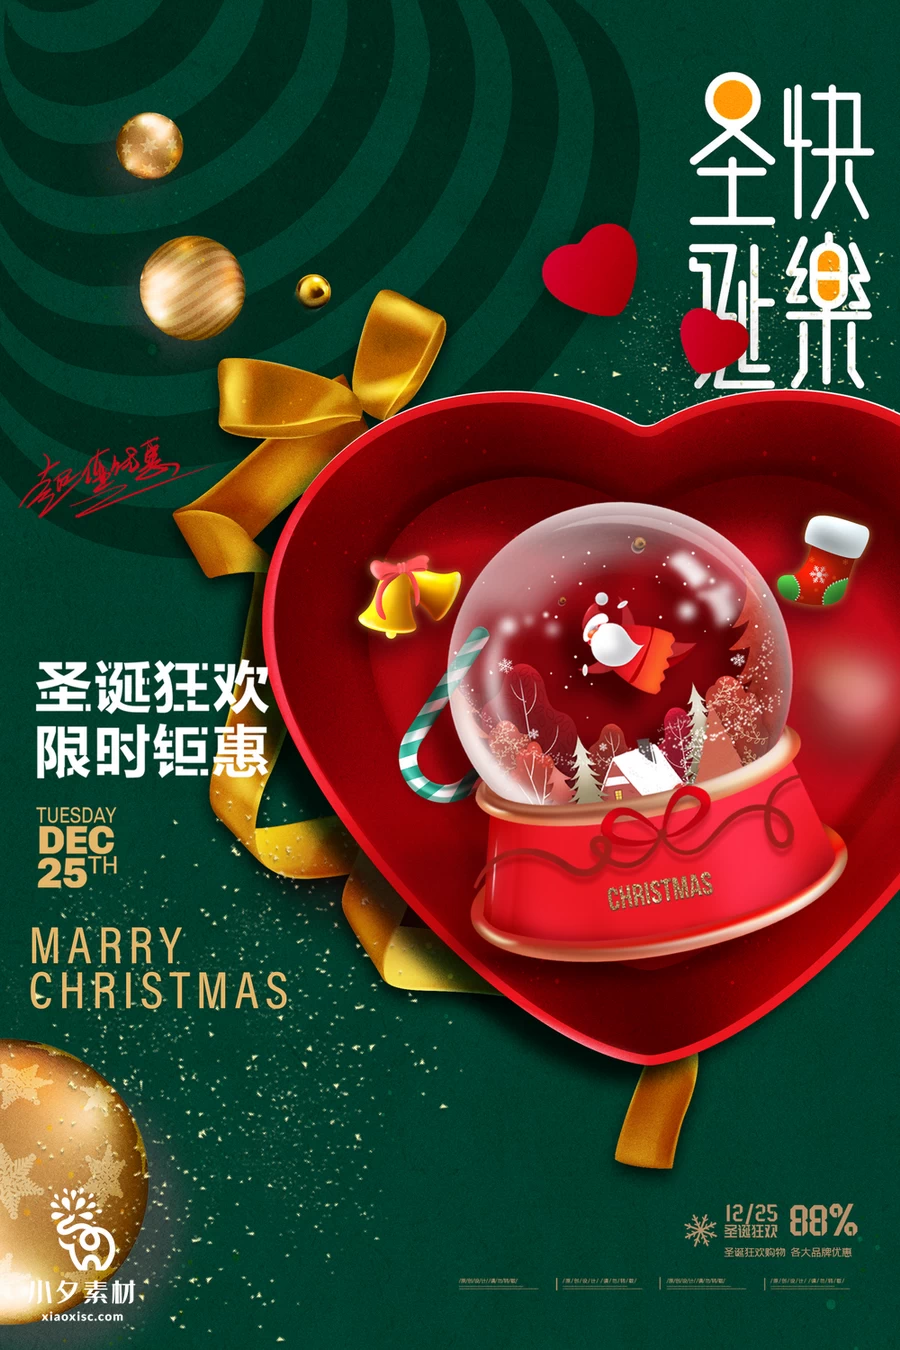 圣诞节节日节庆海报模板PSD分层设计素材【016】